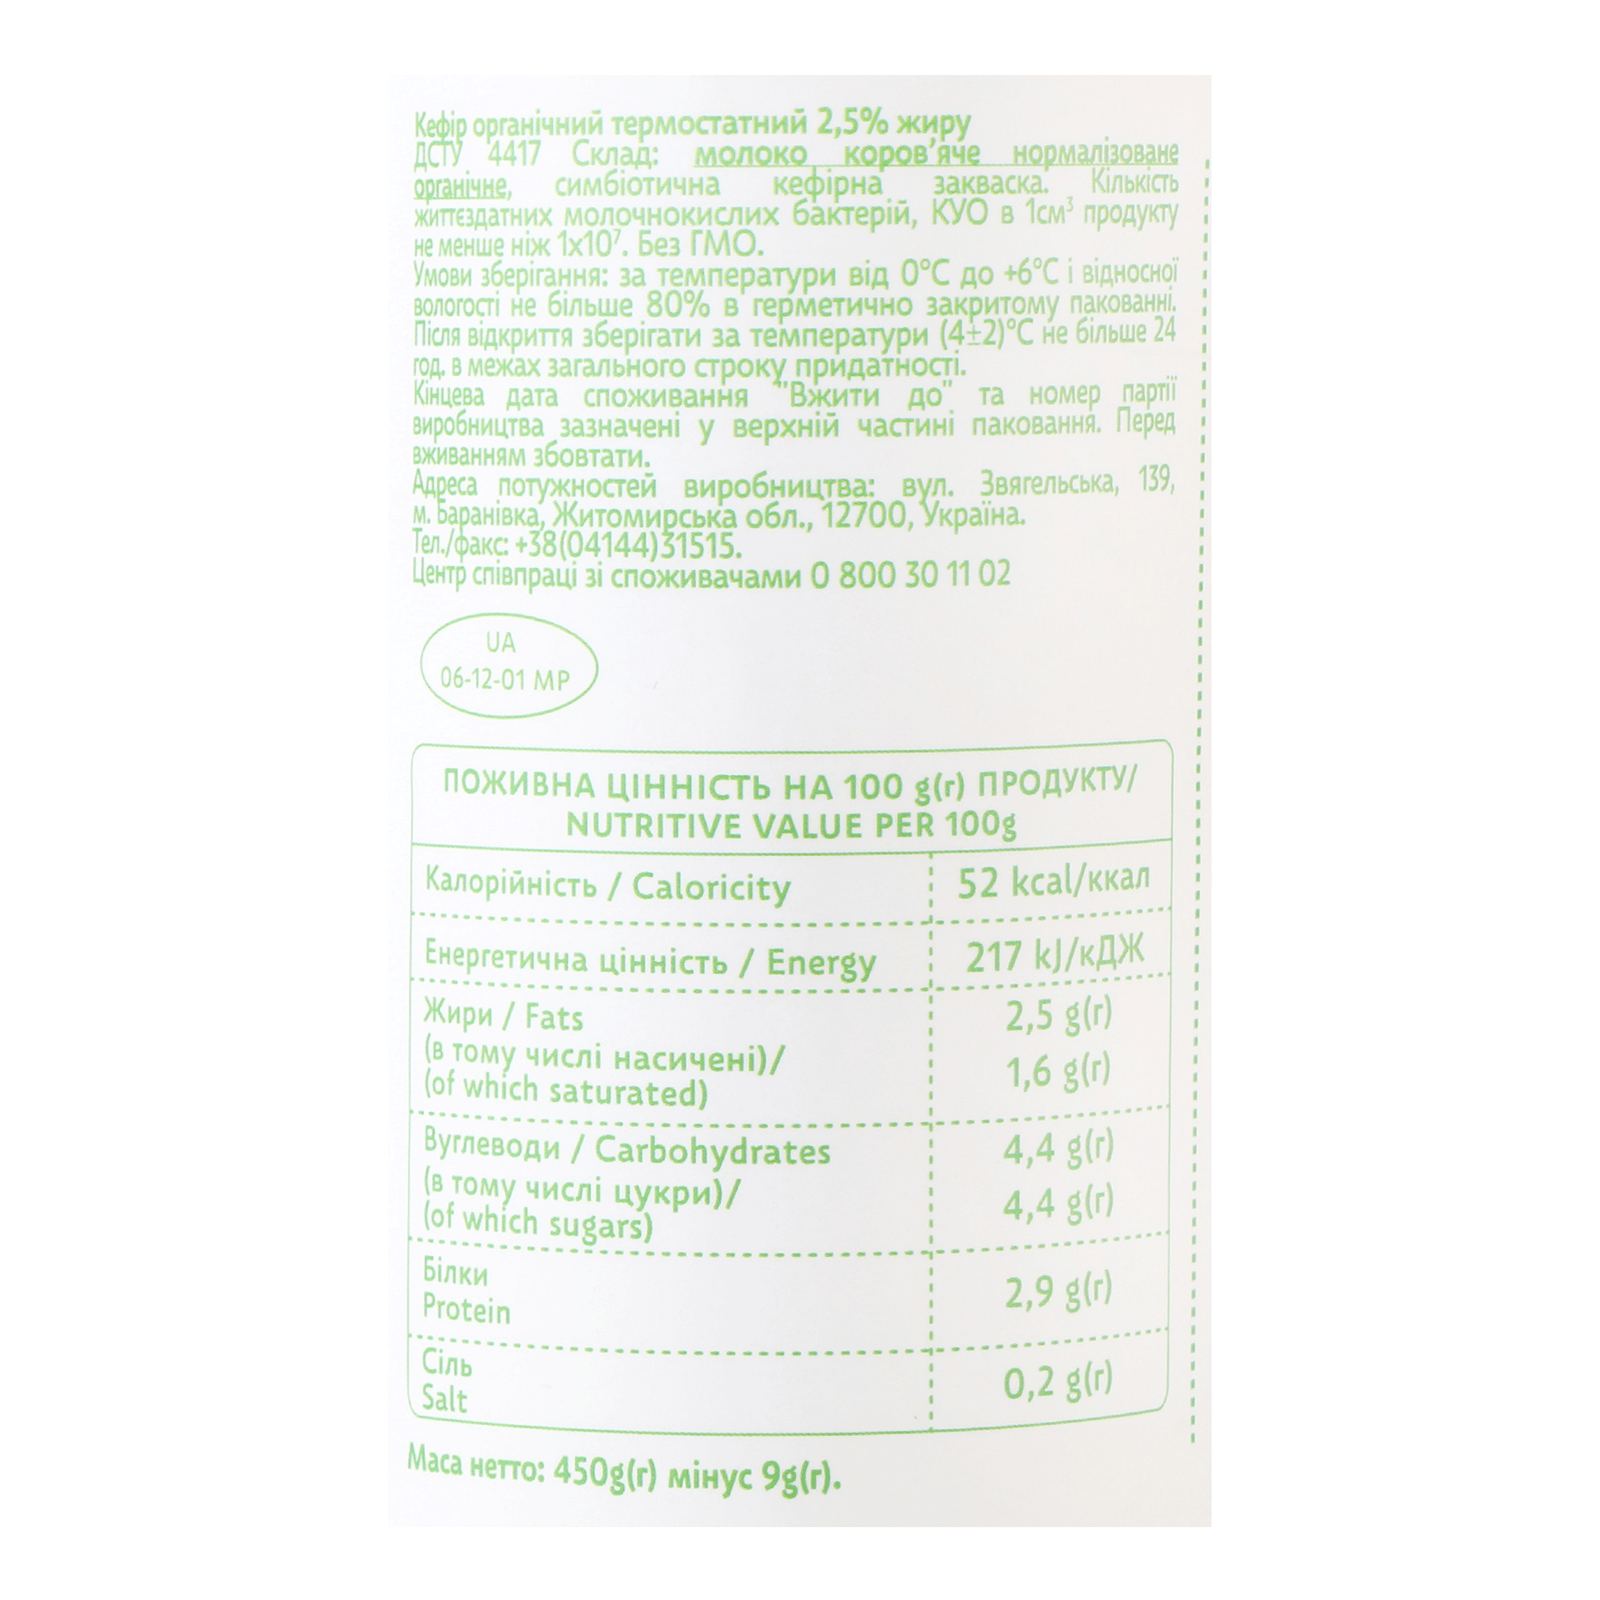 Кефір Organic Milk термостатний органічн 2,5% пл - 5